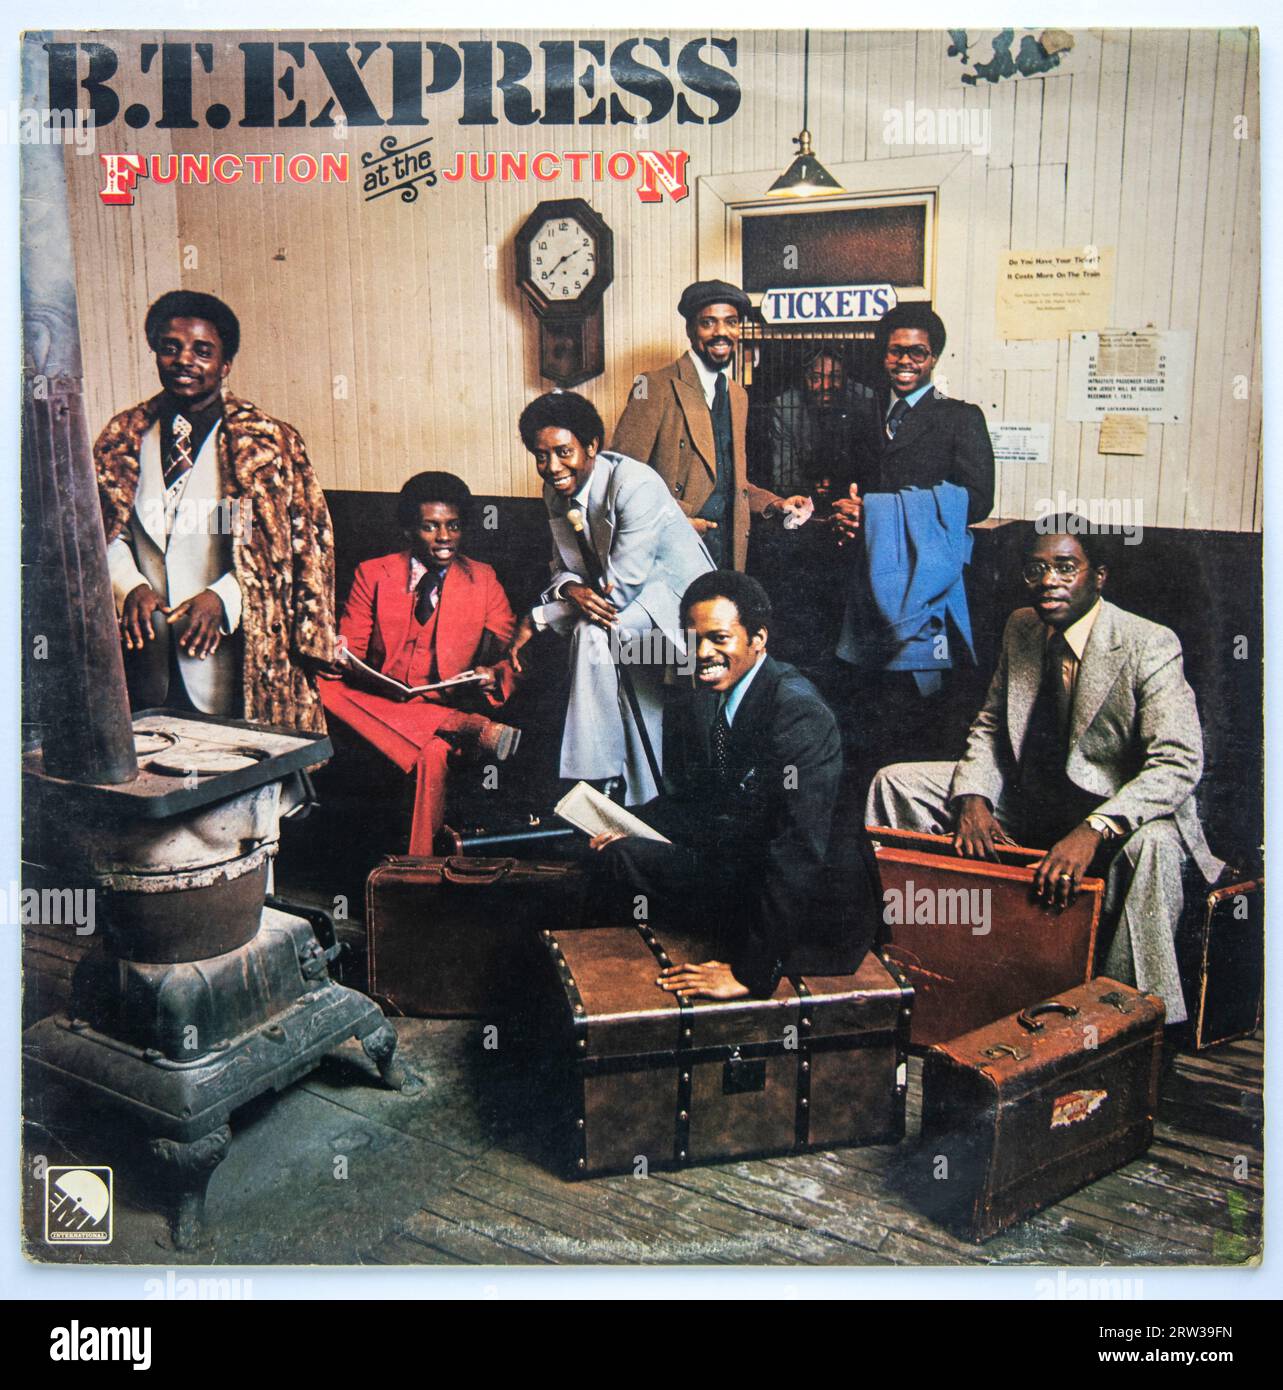 Copertina LP dell'album Function at the Junction di BT Express, pubblicato nel 1977 Foto Stock